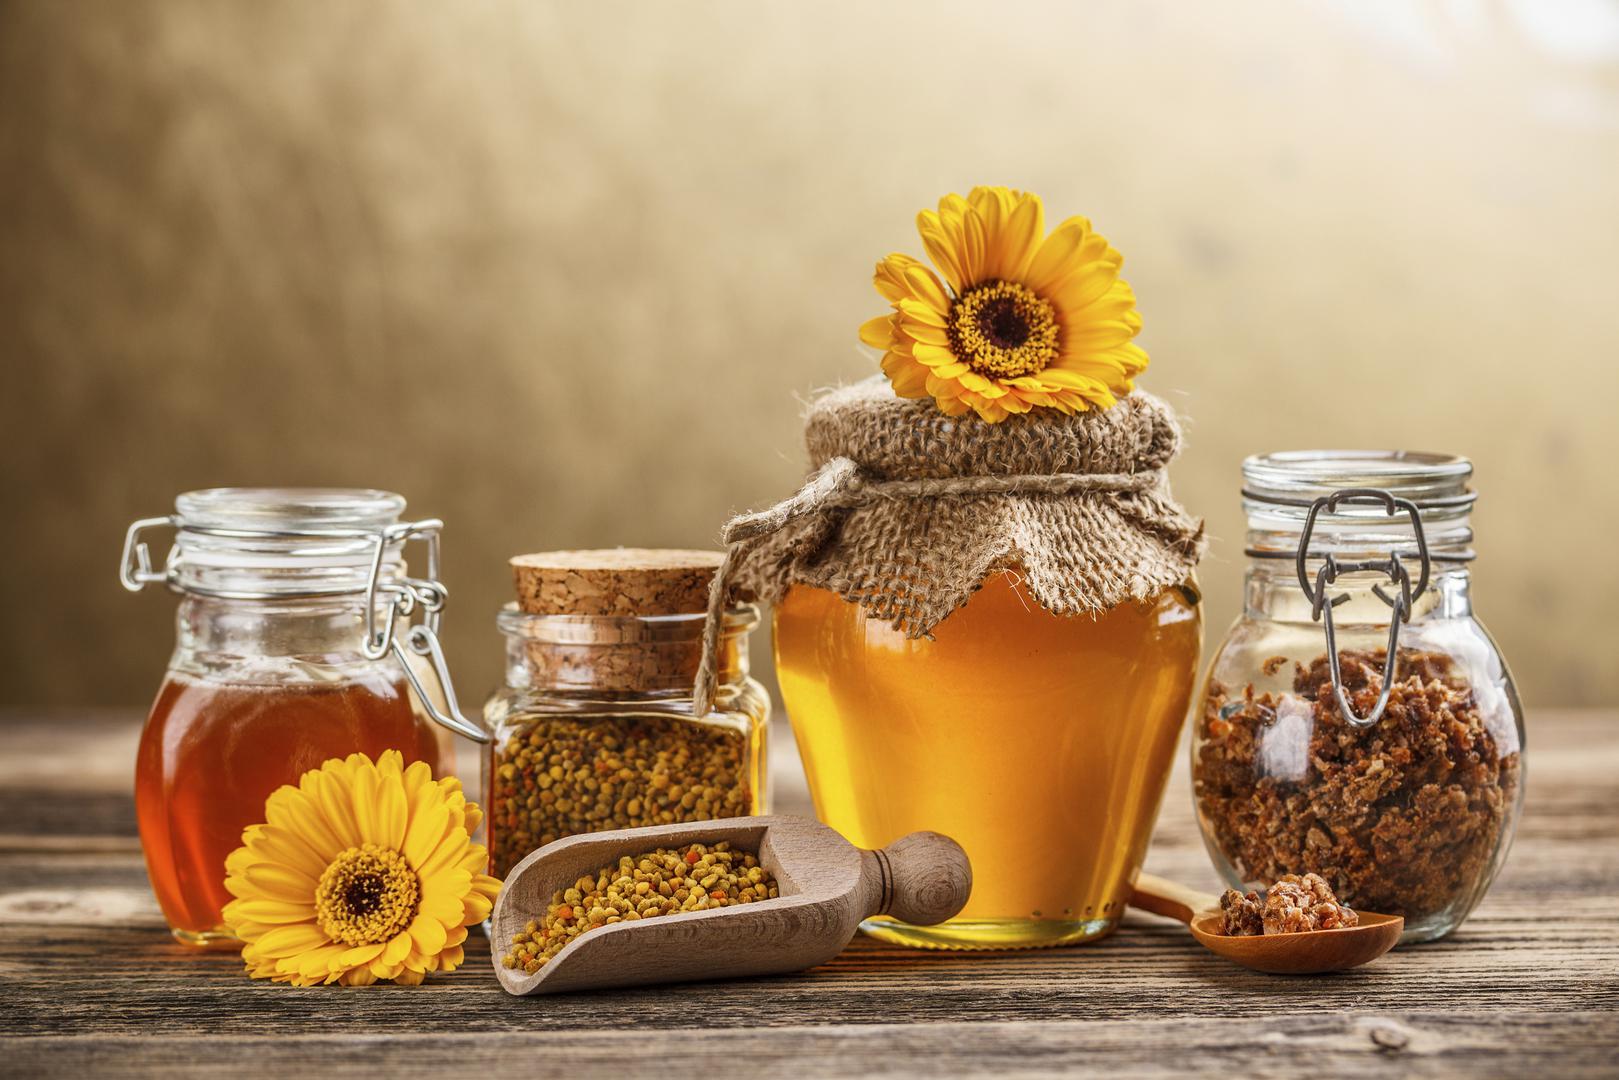 Med – Med je jedna od najzdravijih namirnica koju poznajemo. Ipak, djeci mlađoj od dvije godine ne biste trebali davati med, savjetuju liječnici, jer može sadržavati bakterije koje prouzročuju botulizam, potencijalno smrtonosnu bolest.